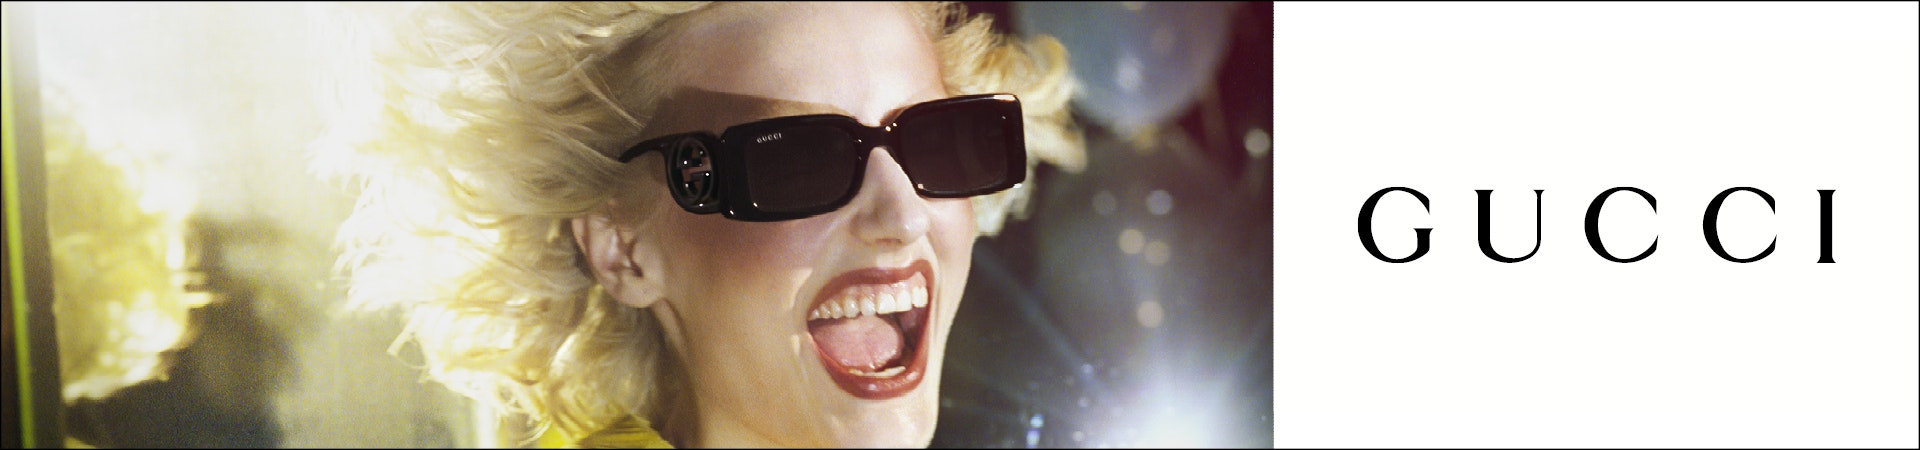 Gucci solbriller herre Se udvalget af Gucci solbriller til mænd her | Synoptik